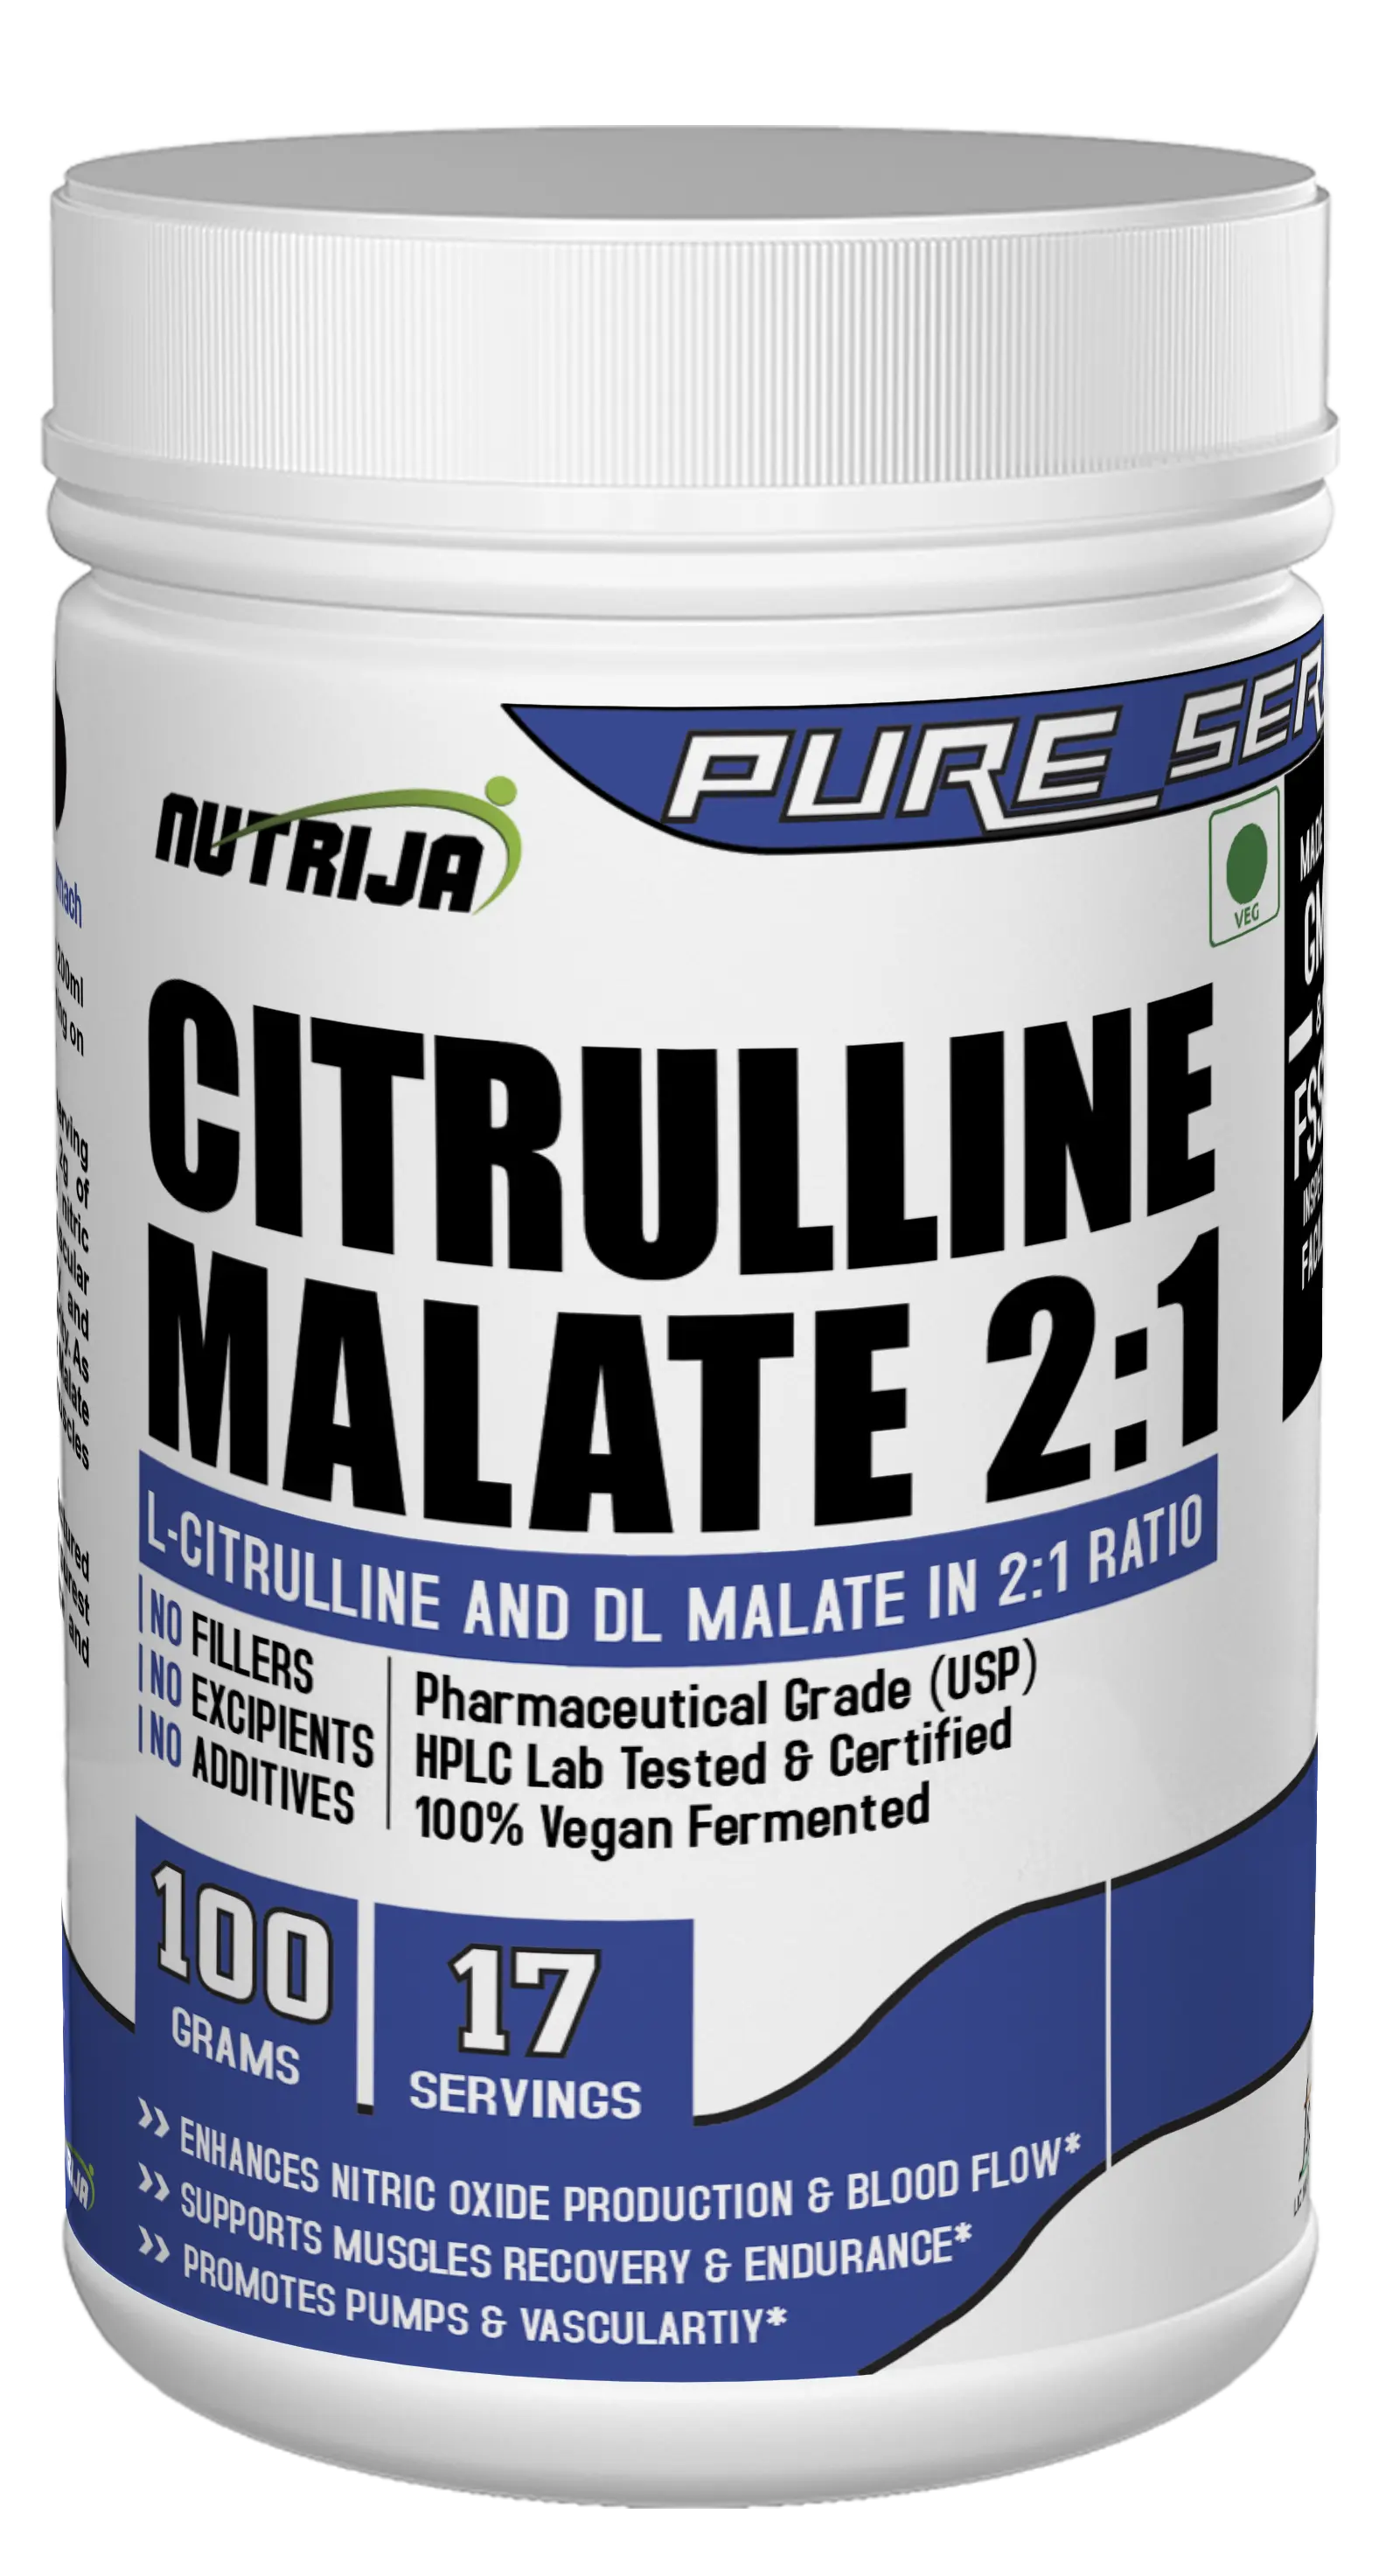 CITRULLINE MALATE- 100 gramas de força aumentada e recuperação mais rápida